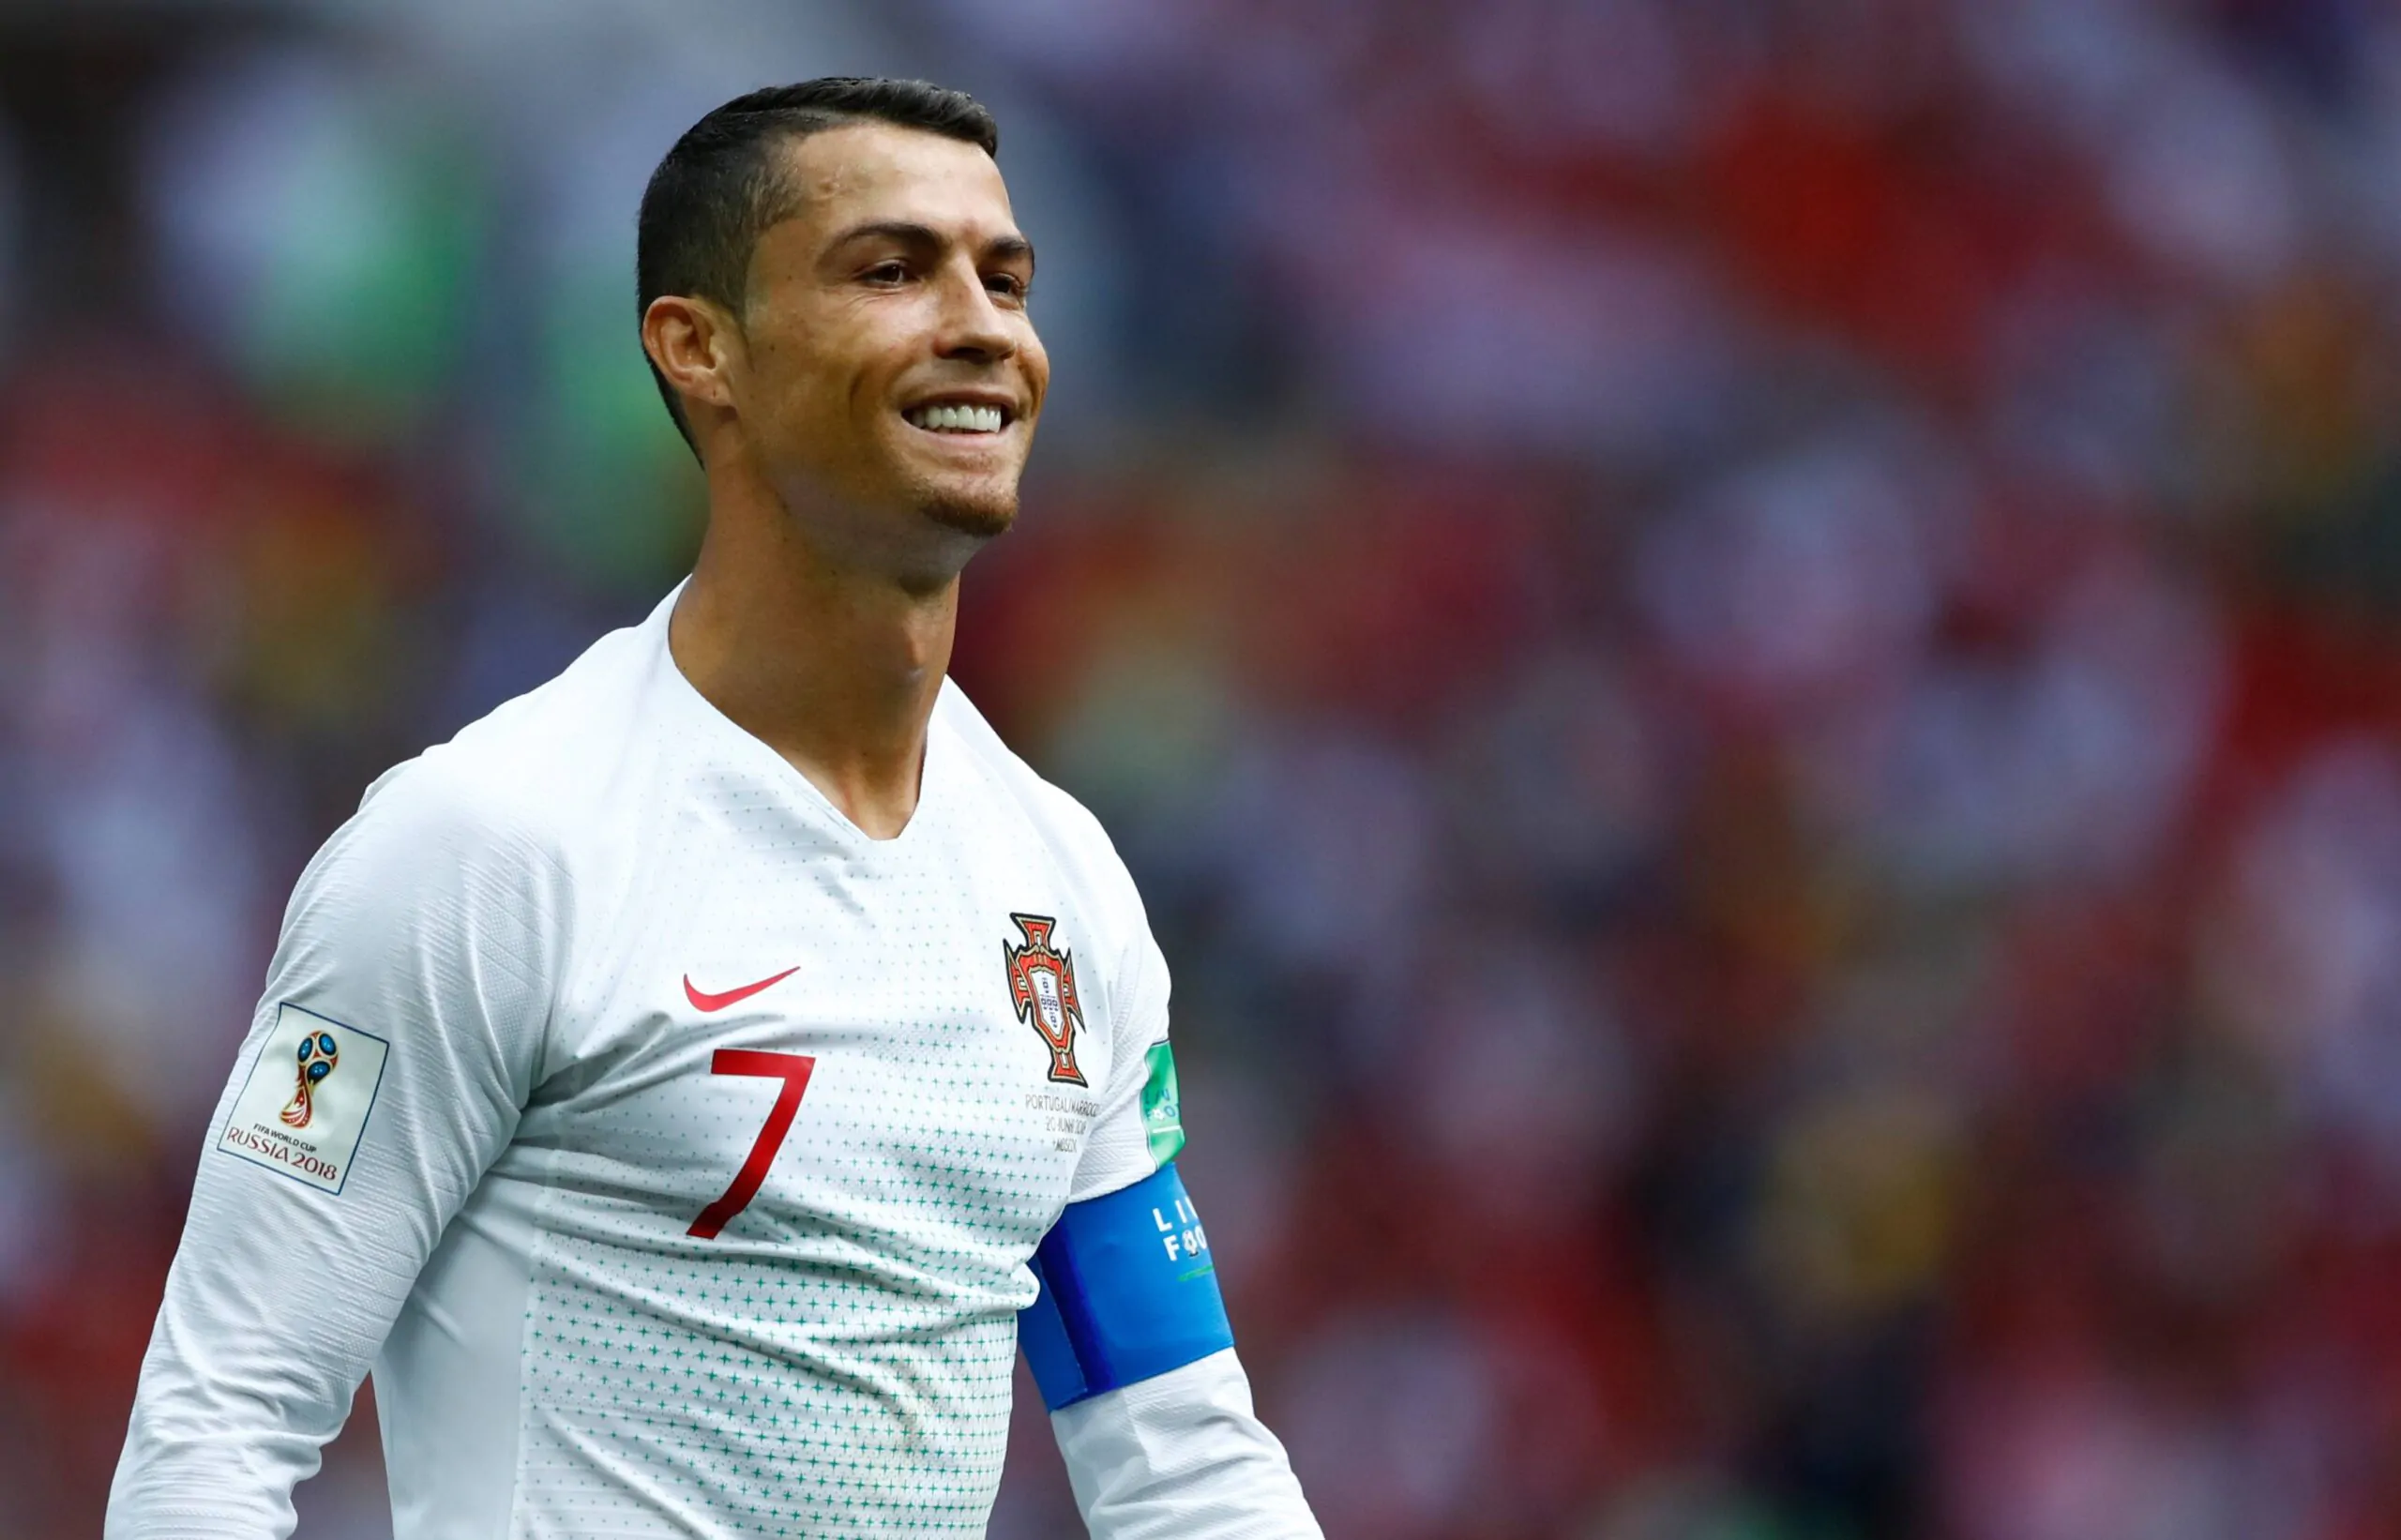 “L’acquisto di Ronaldo ha fatto bene alla Serie A ma non alla Juve”, la dichiarazione del presidente